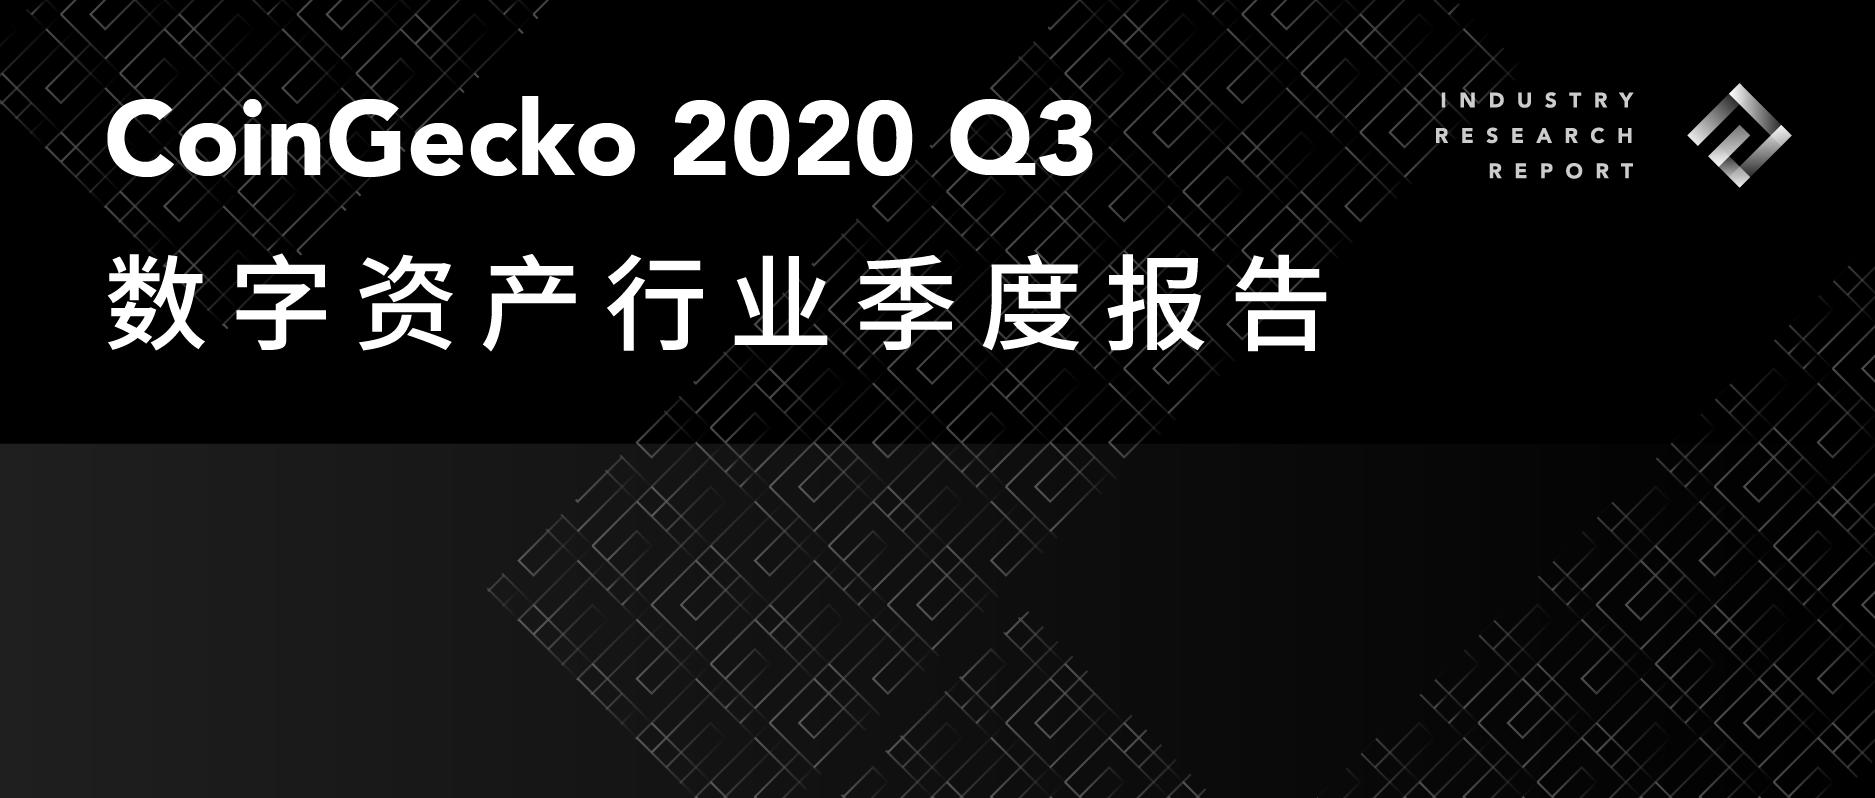 CoinGecko：2020 Q3数字资产行业季度报告